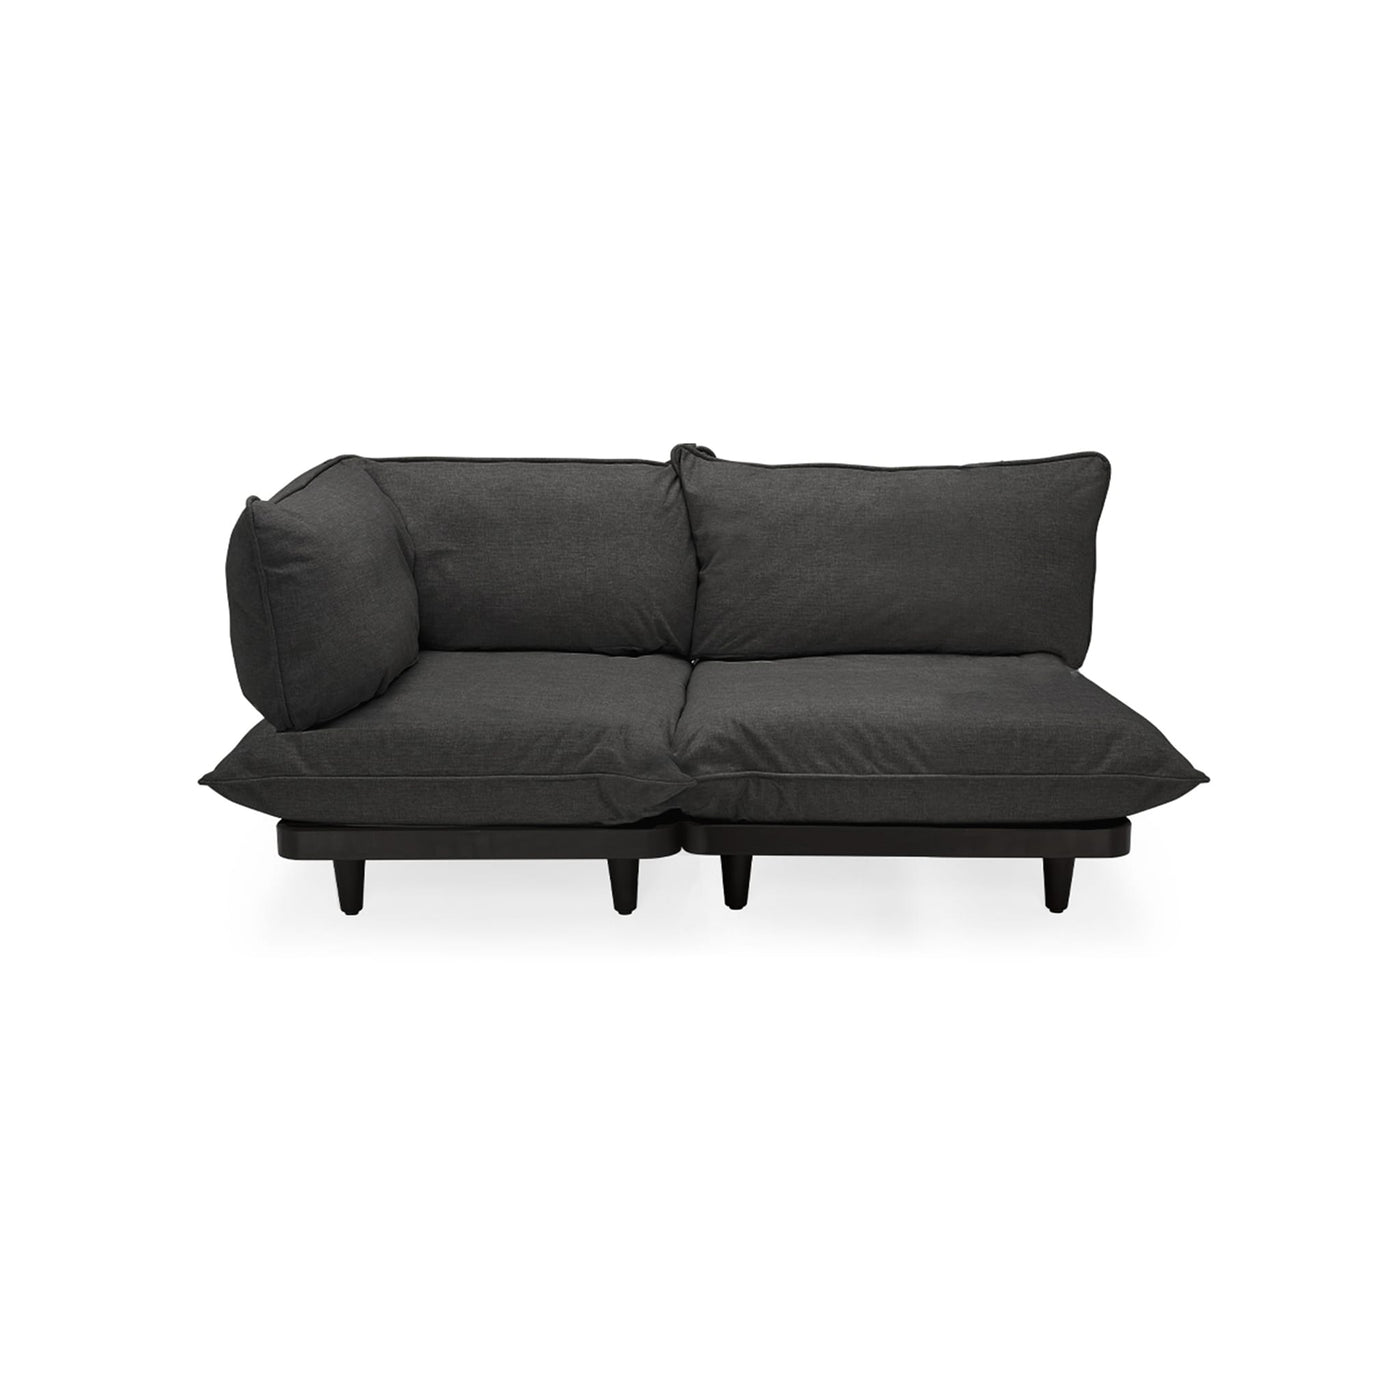 Découvrez le luxe durable du sofa Paletti de Fatboy, parfait pour le plein air canadien. Son design polyvalent crée un sanctuaire extérieur, alliant élégance et résistance aux intempéries. Gris tonitruant.